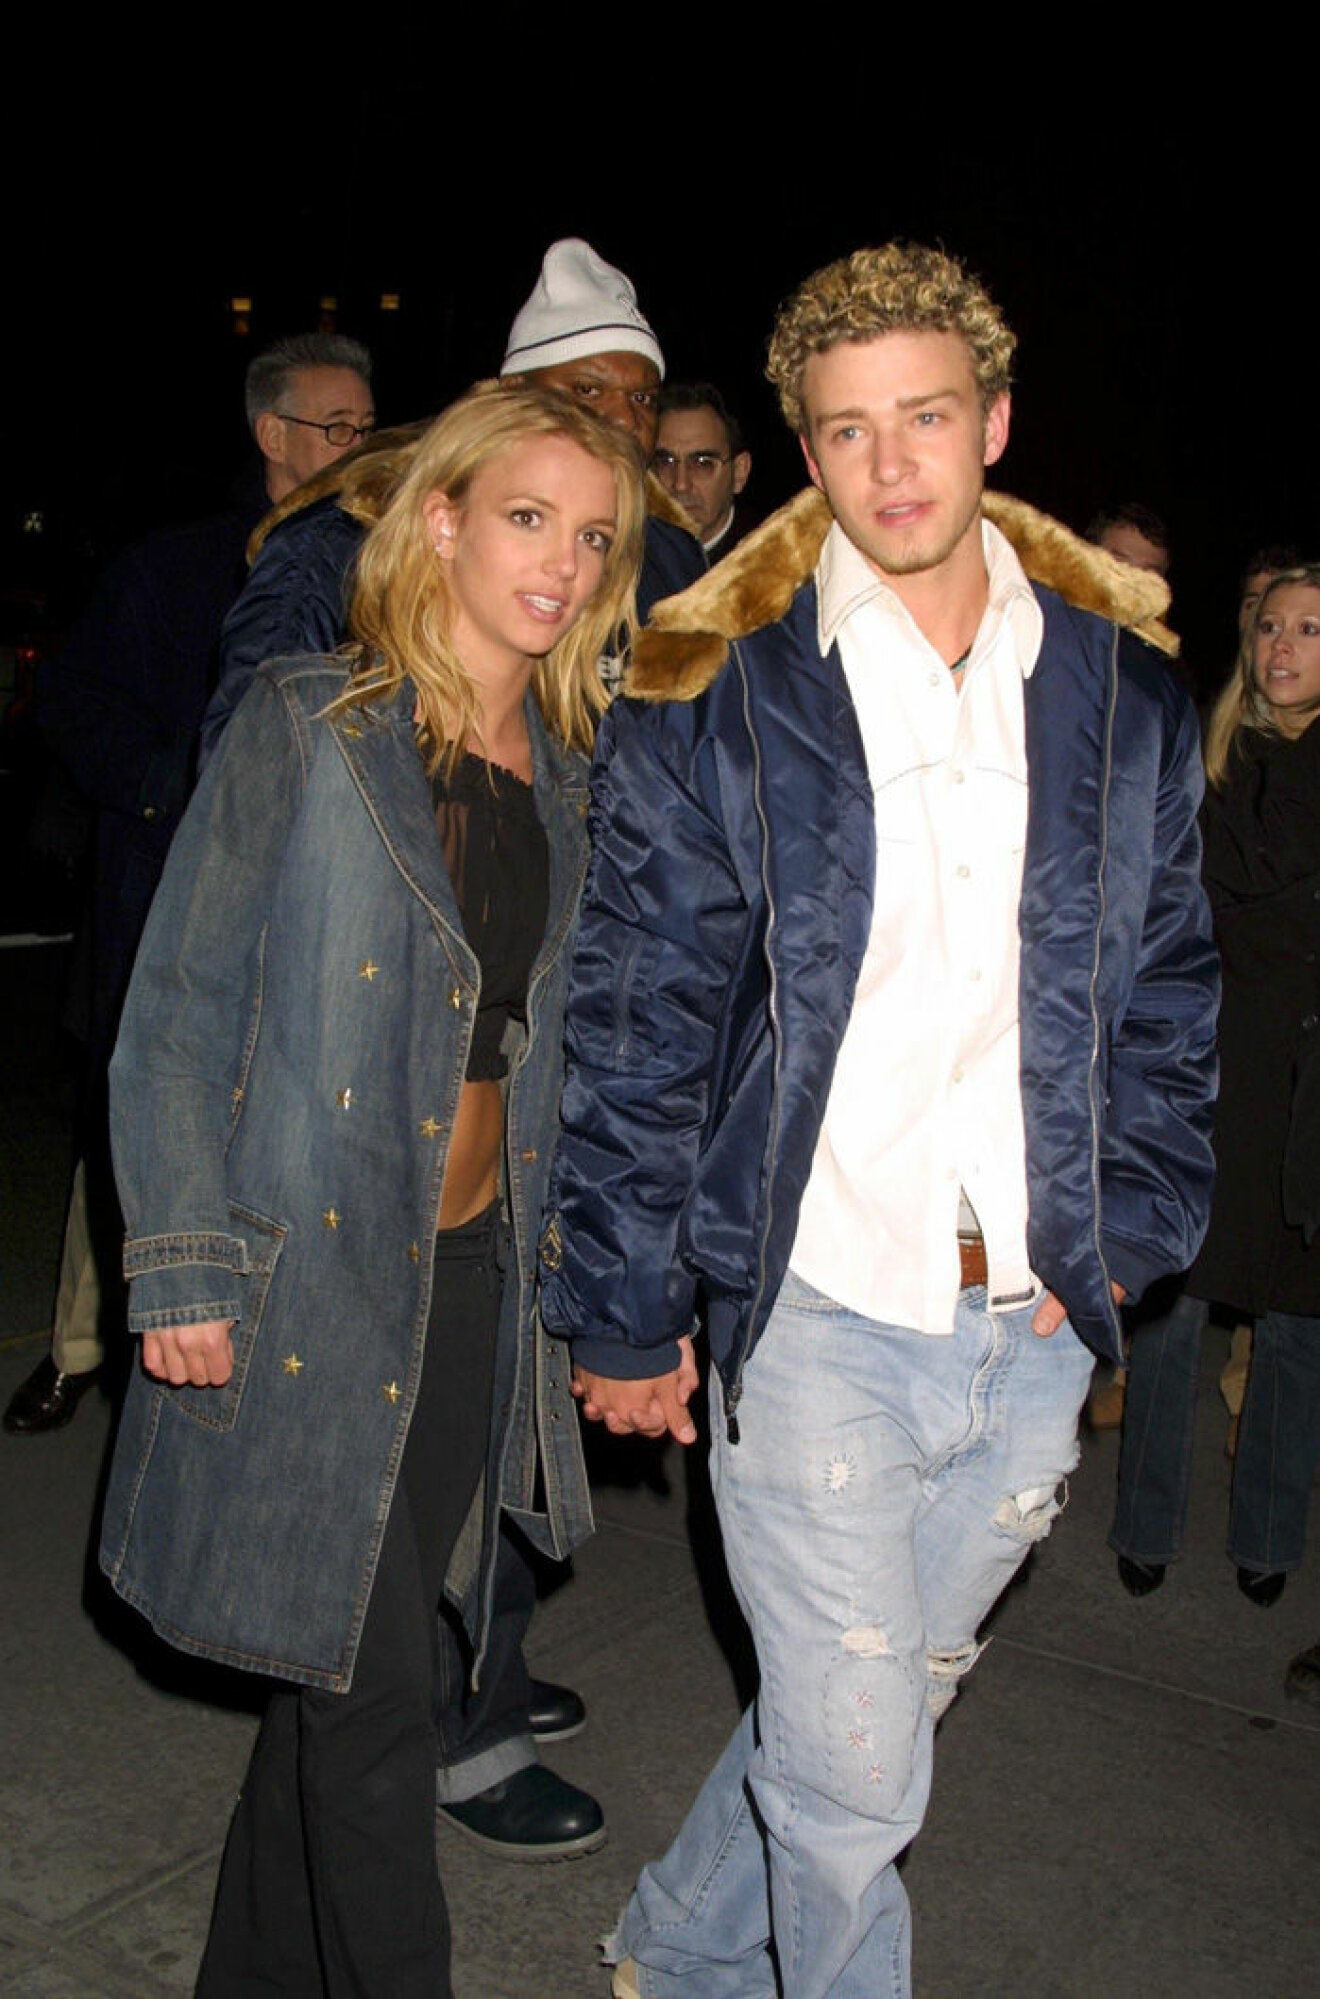 En bild på Britney Spears och Justin Timberlake 2002.